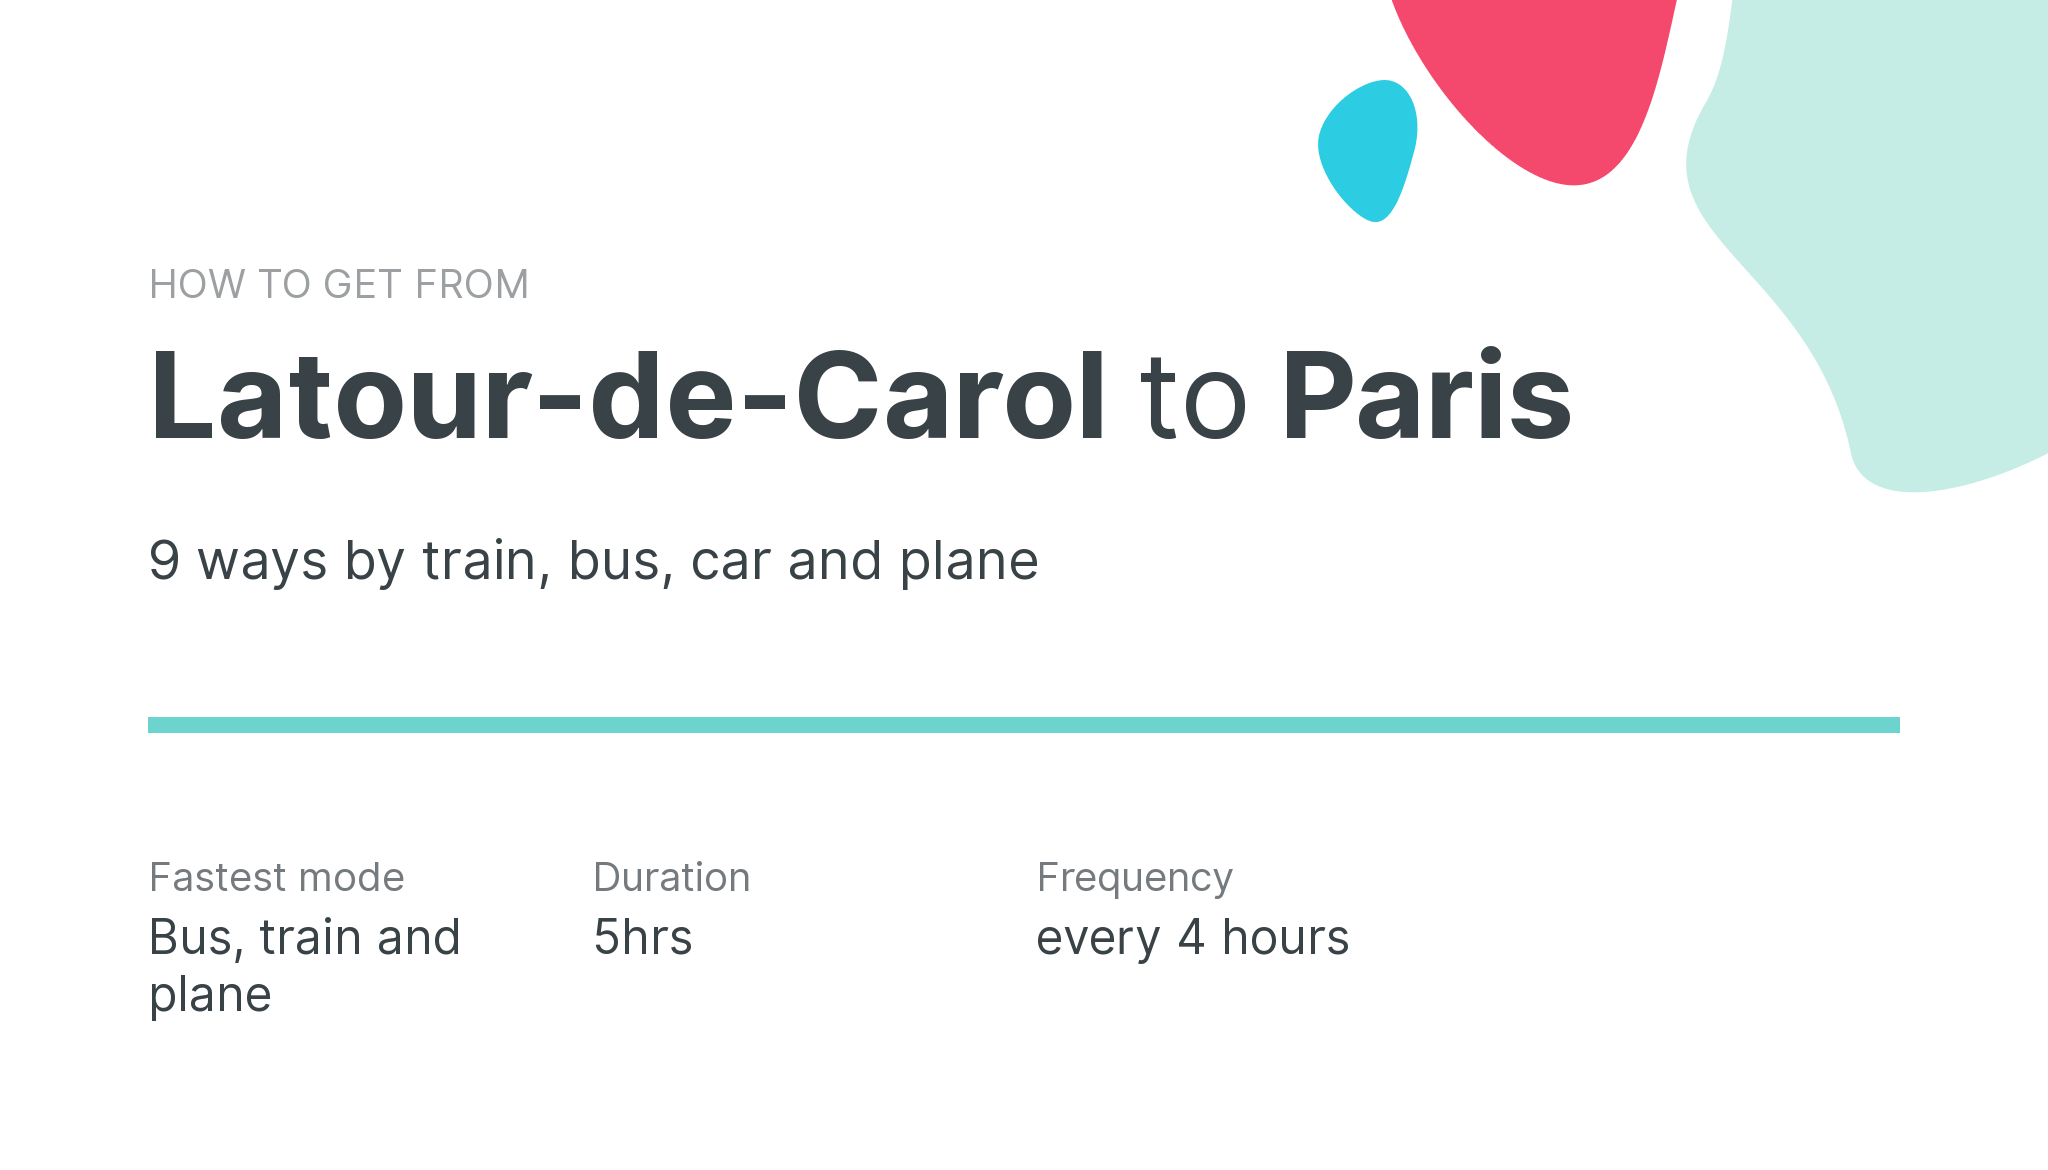 How do I get from Latour-de-Carol to Paris